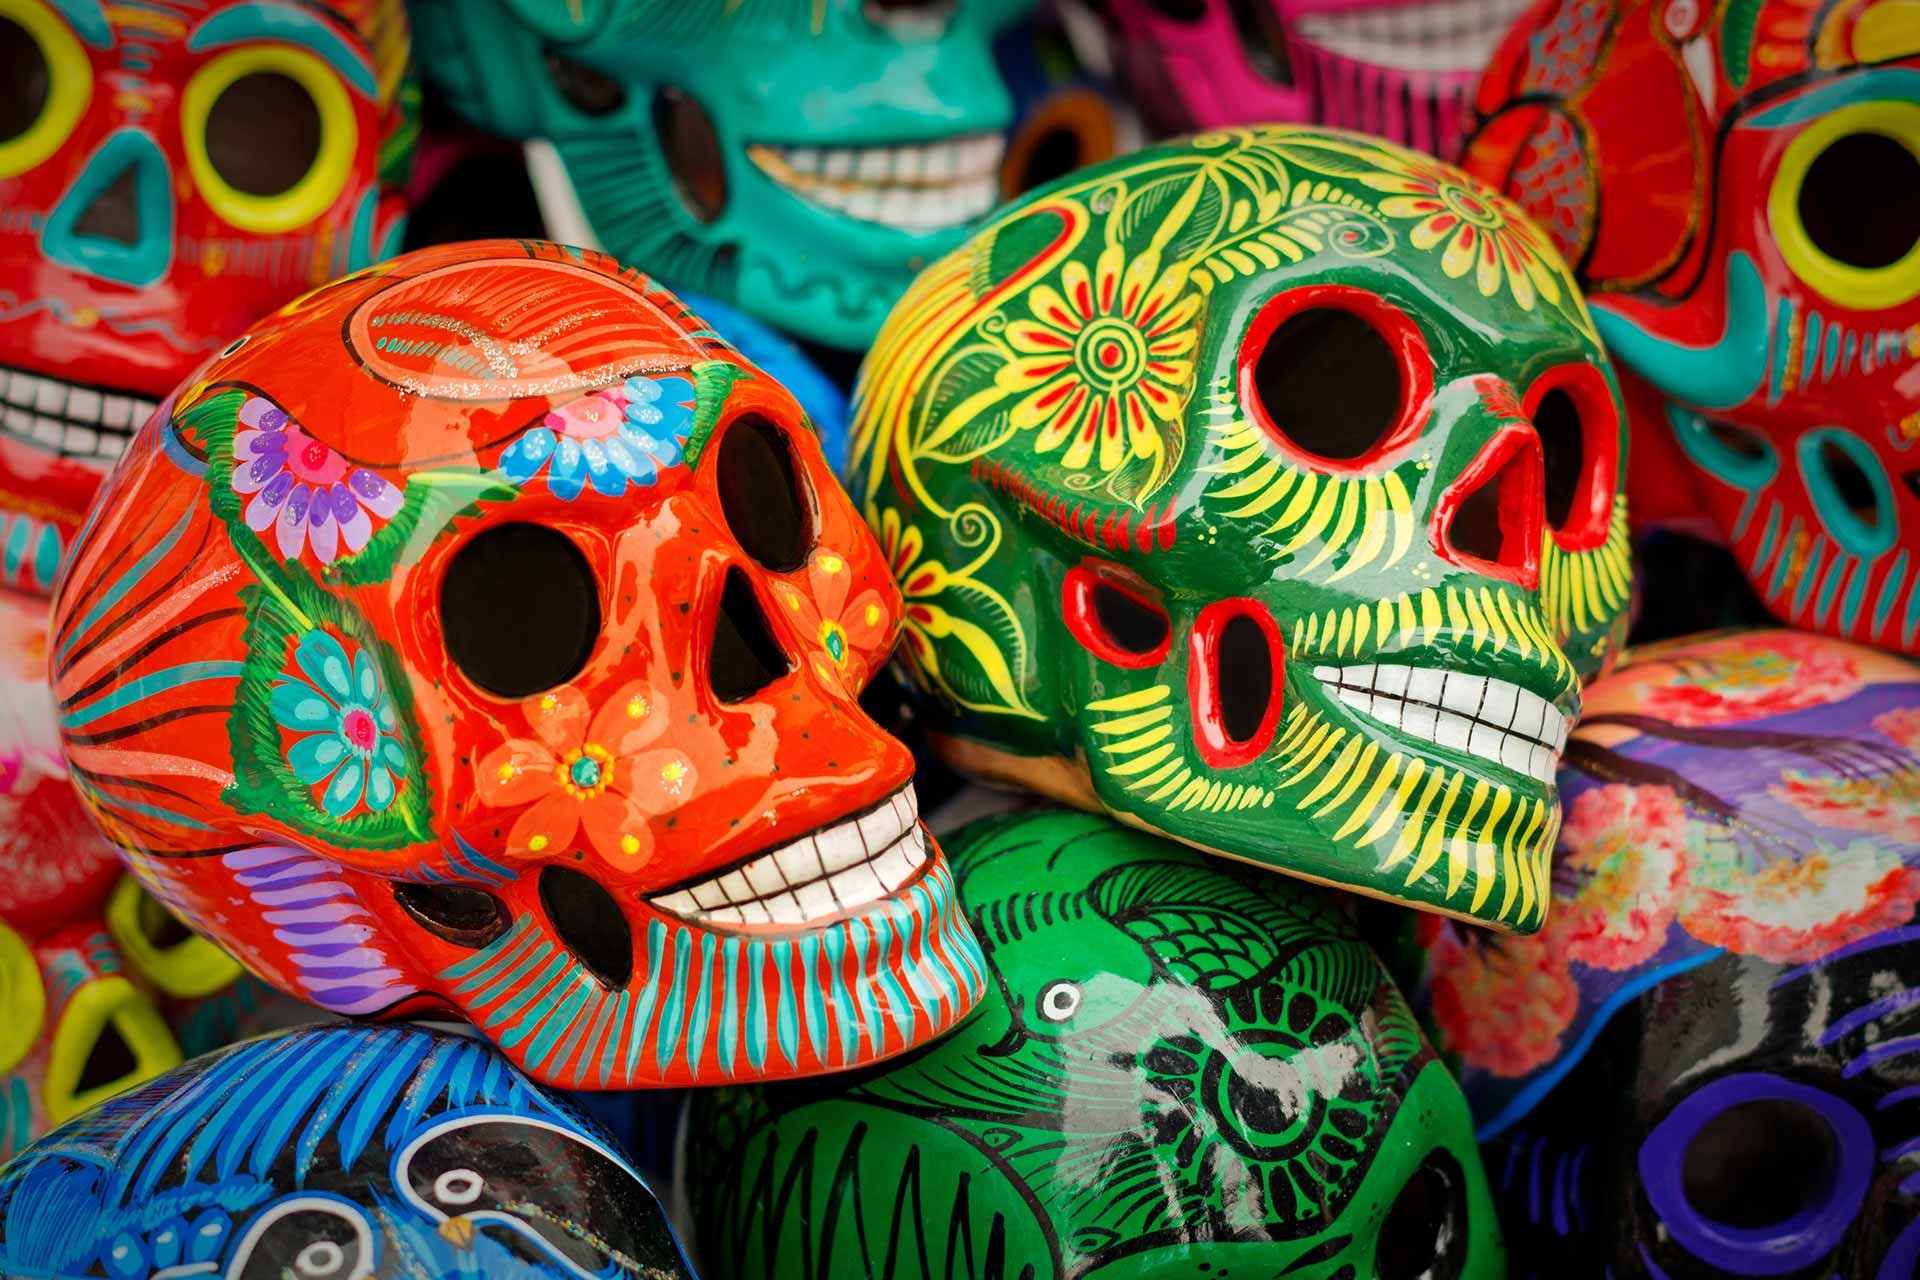 Die bunt-bemahlten Totenköpfe – ein Symbol des »Dia de los muertos« – findet man heutzutage bereits zu jeder Jahreszeit ausgestellt. 